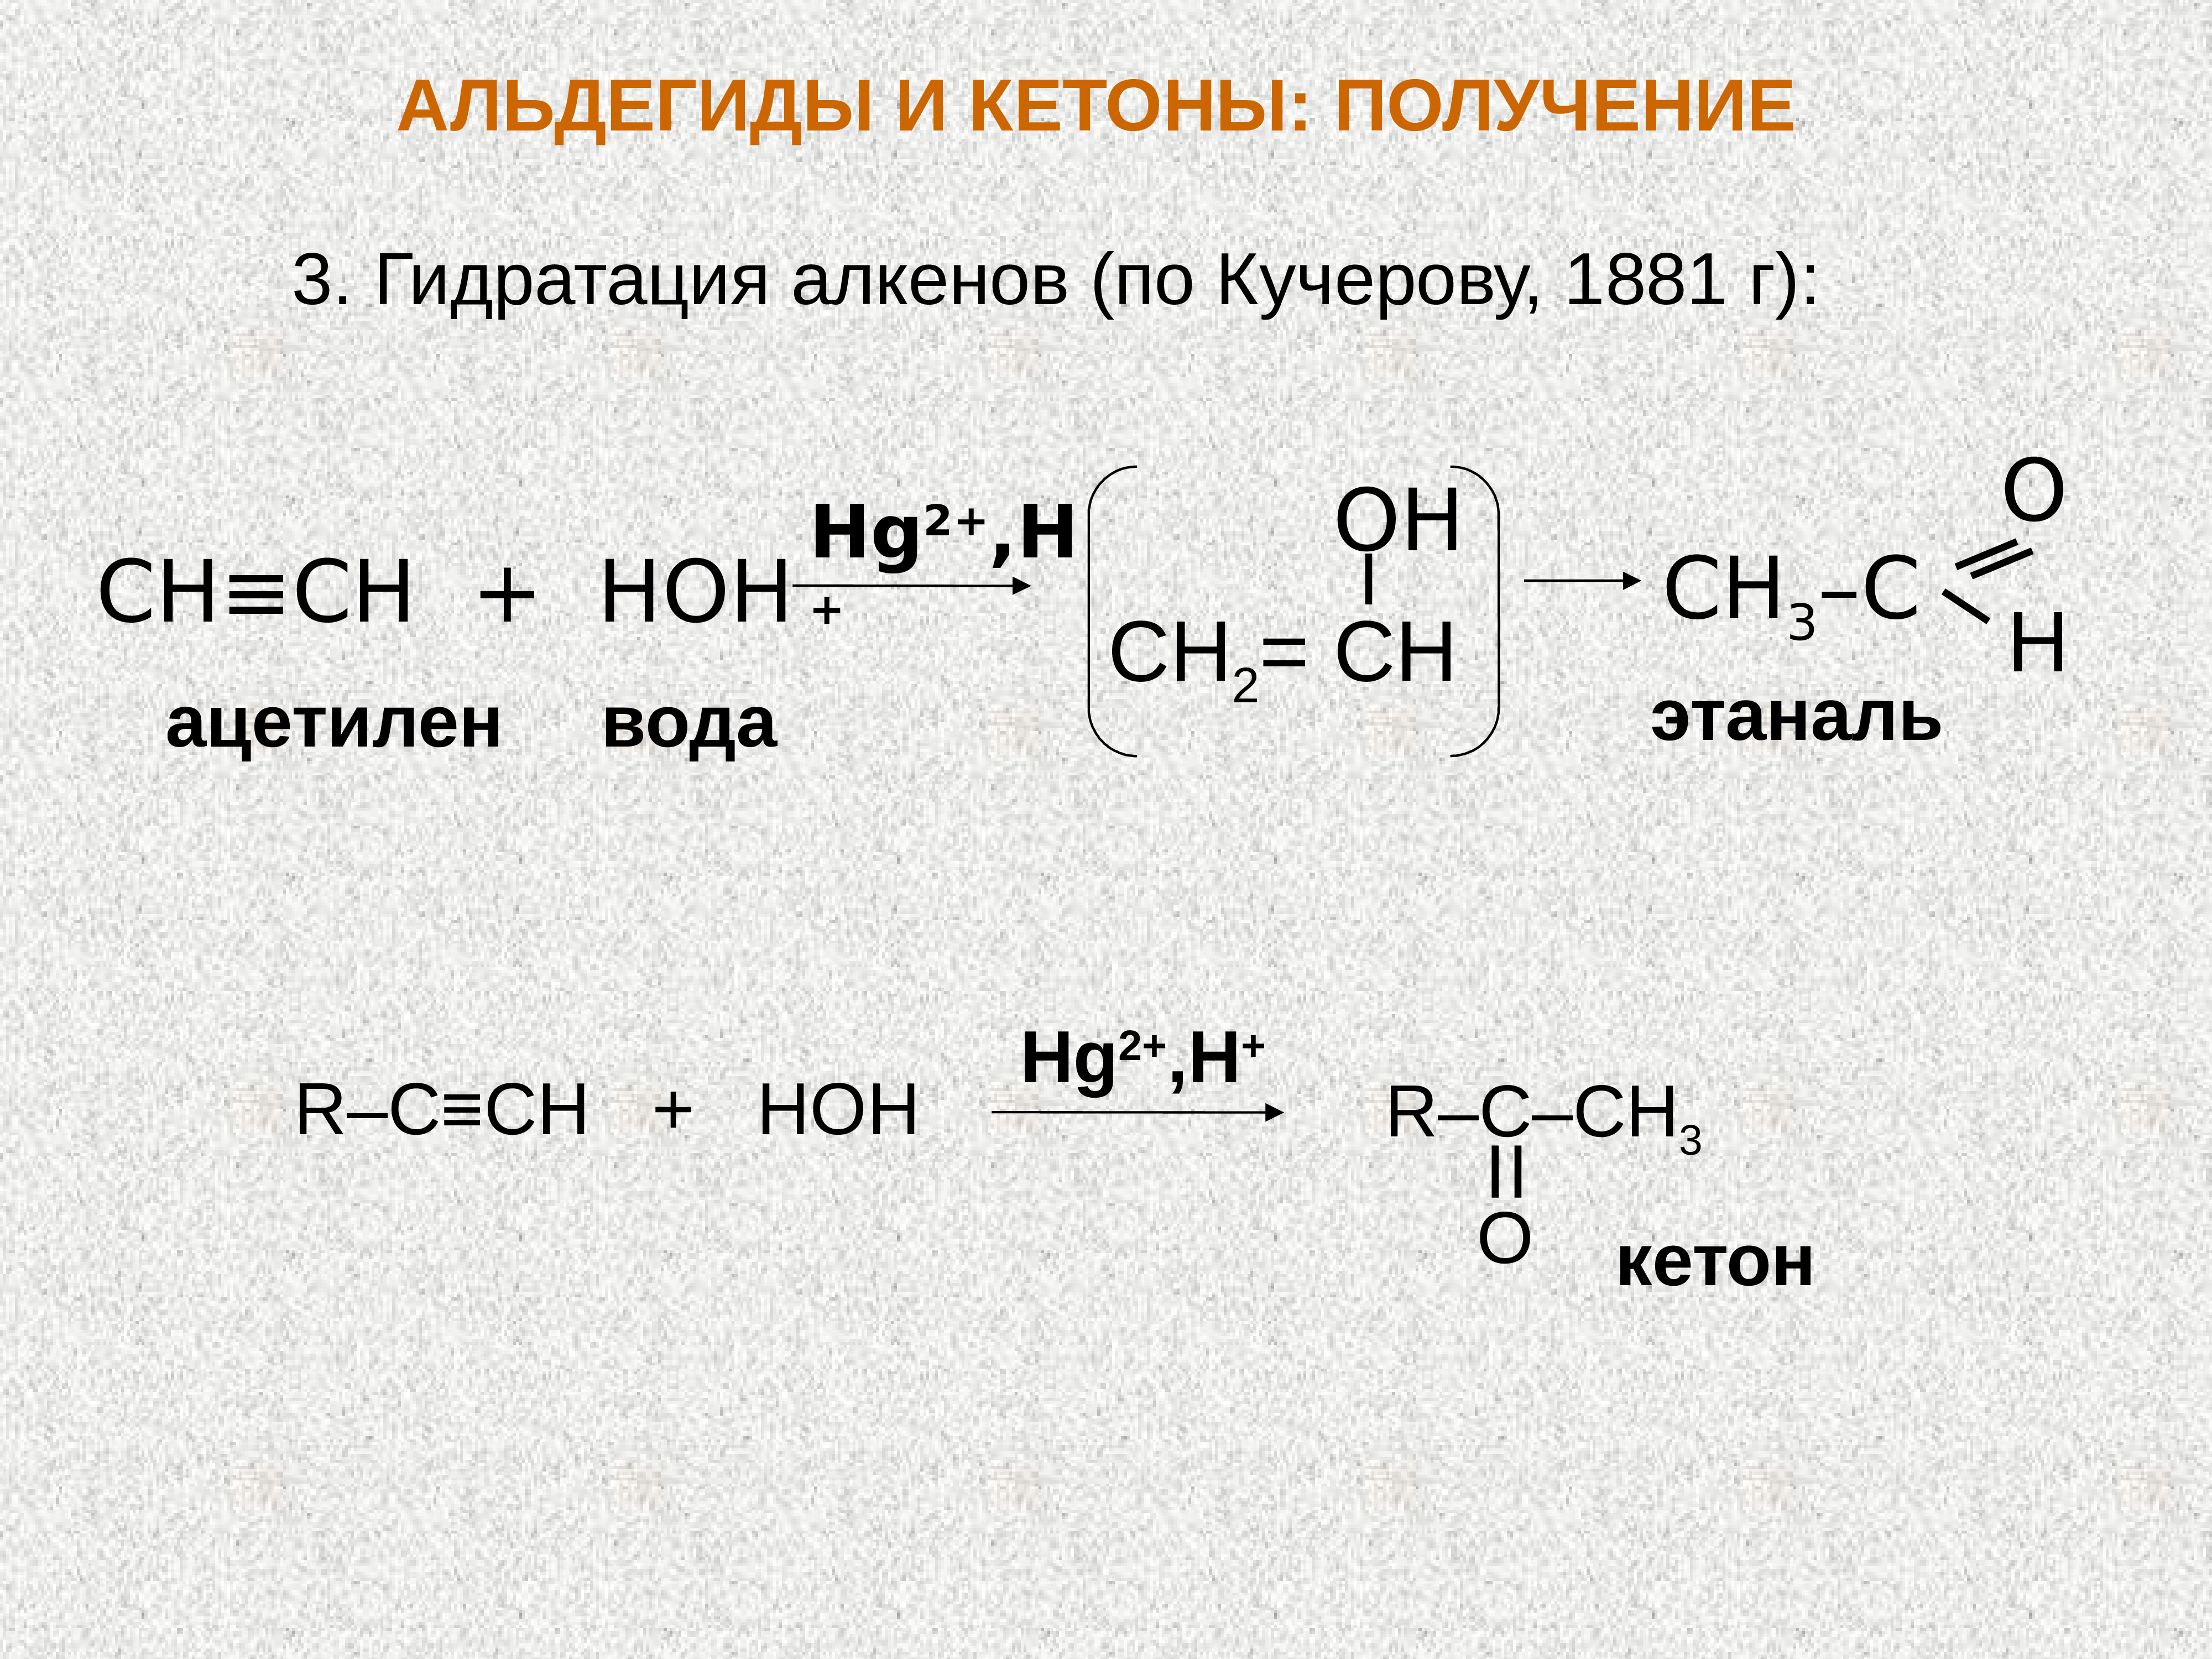 При взаимодействии пропина и воды образуется. Ацетилен и вода hg2+. Ацетилен + диэтилкетон. Ацетилен и вода реакция. Ацетилен плюс вода.